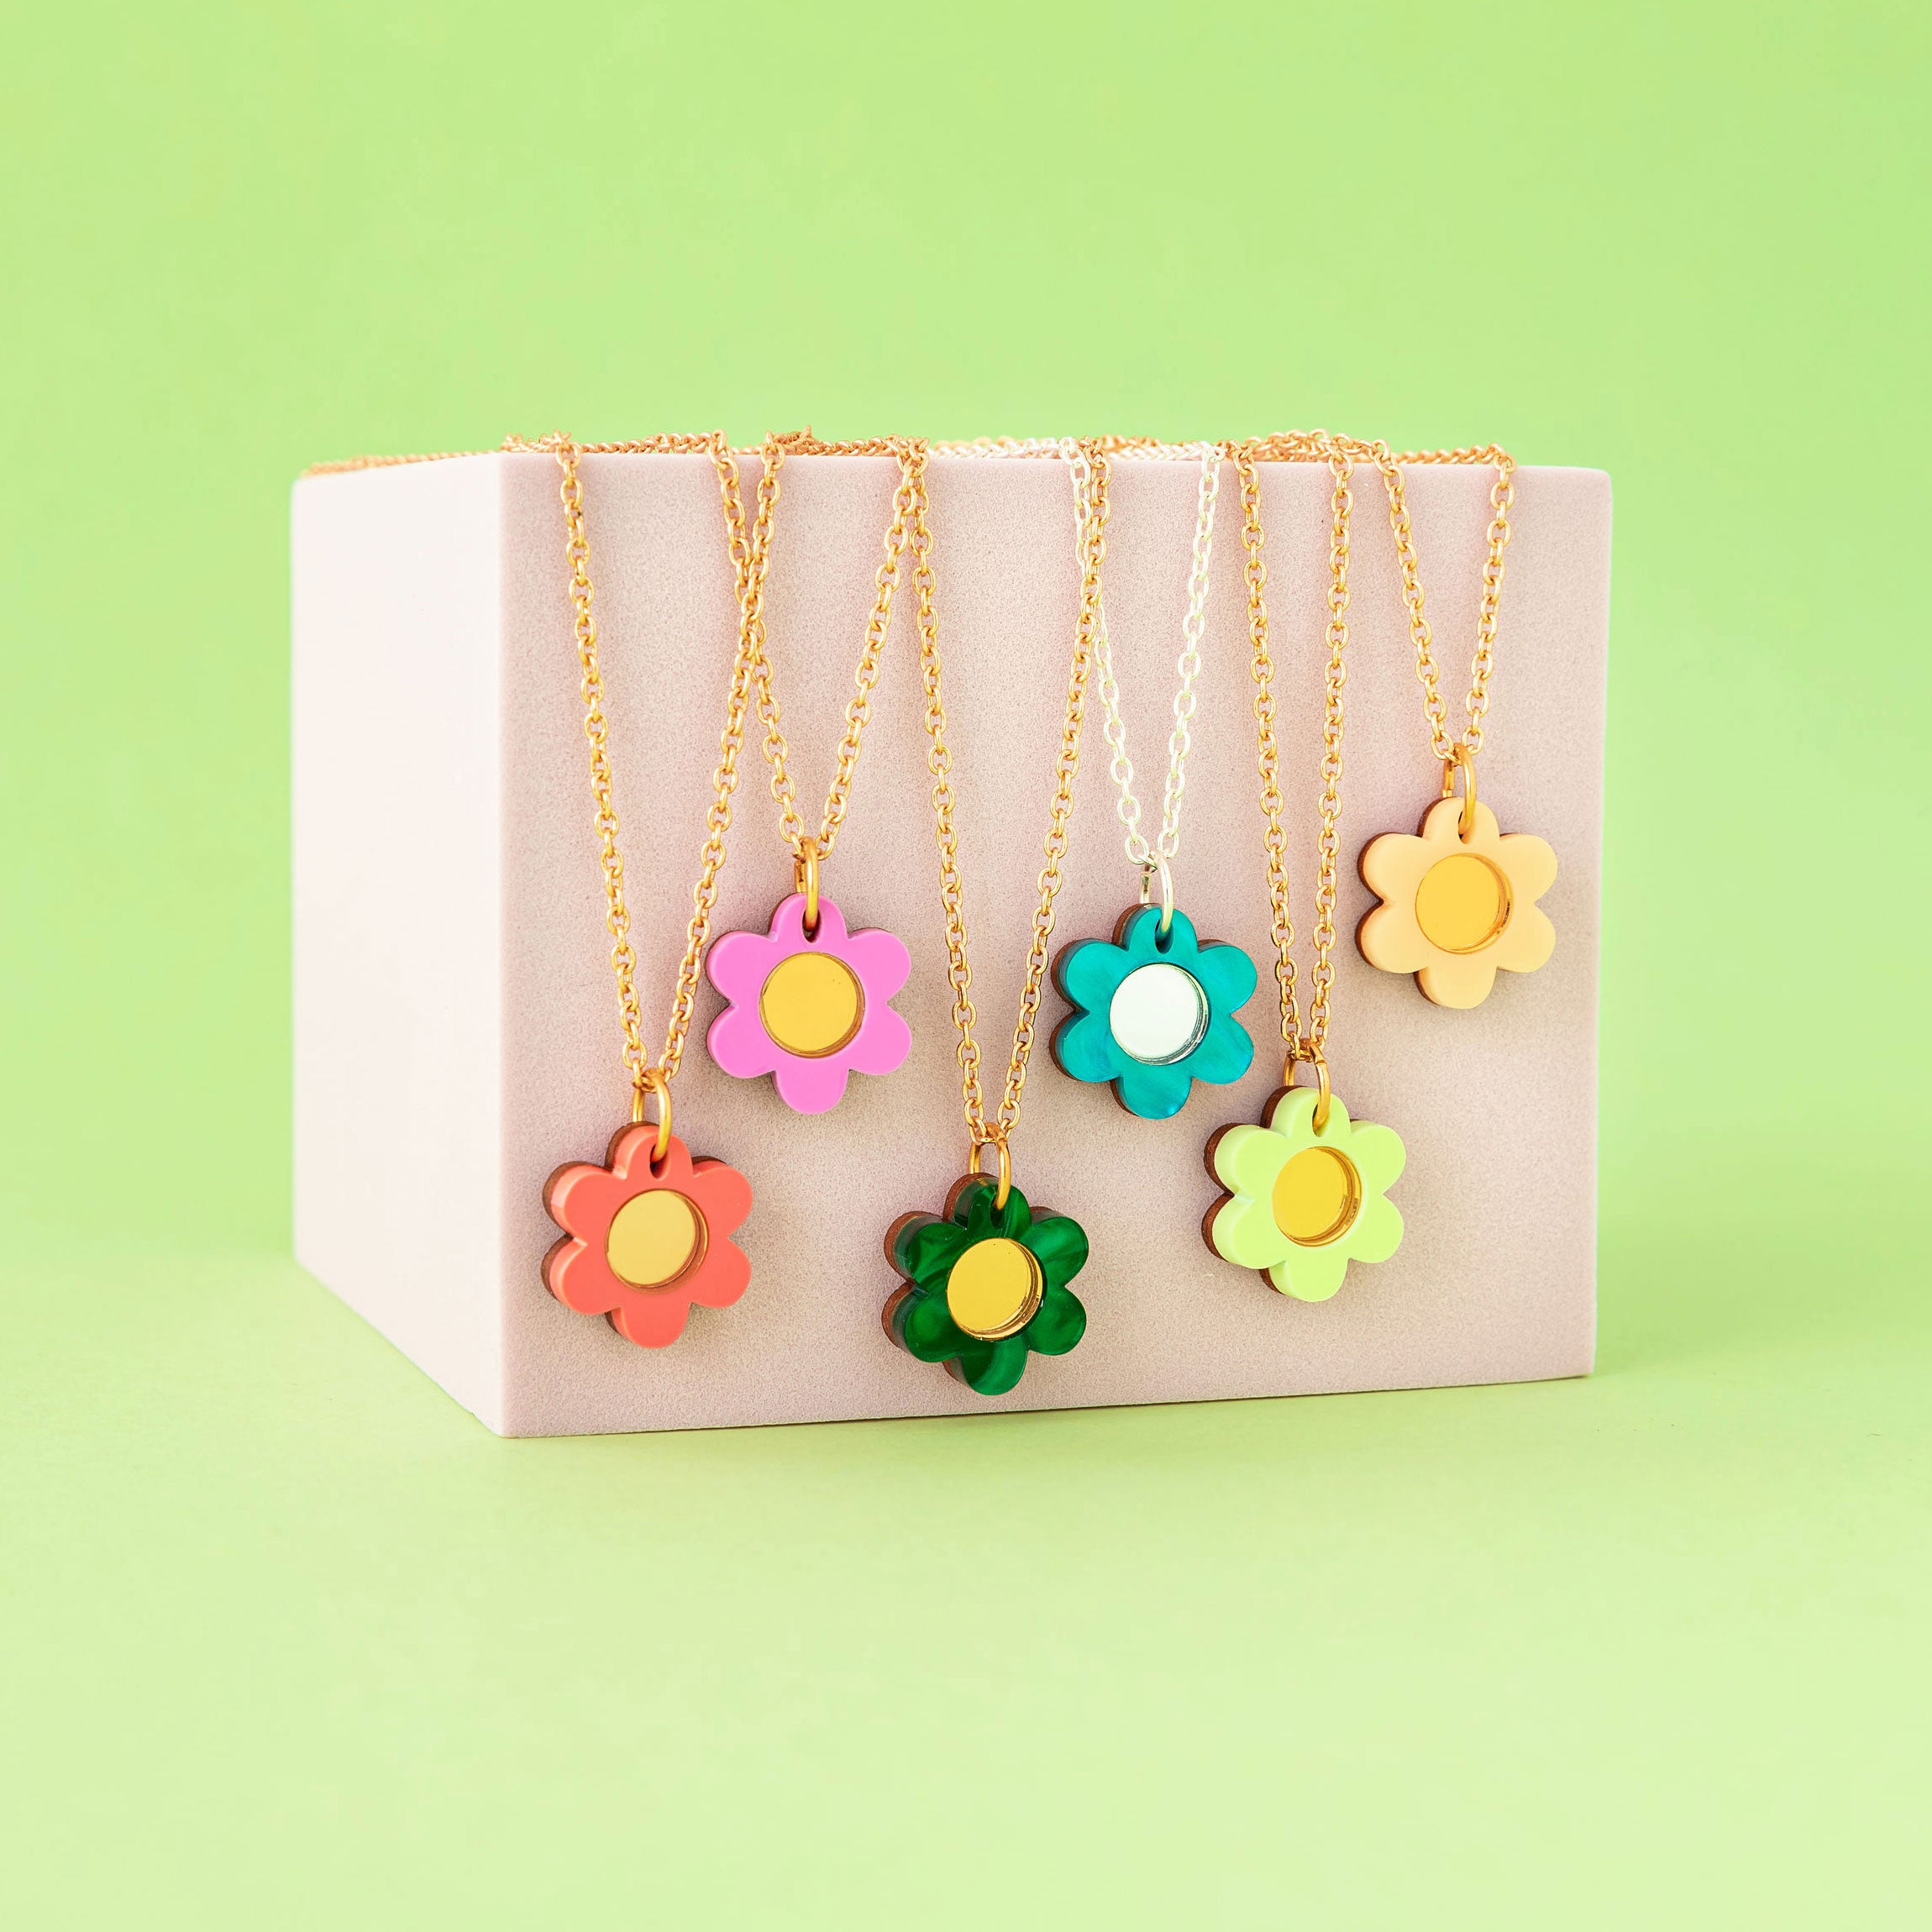 Birth Flower Necklace, Gold Birth Flower Jewelry, Birth Month Flower  Necklace Gift for Her, Birthday Flower Necklace, Birthday Gift - Etsy